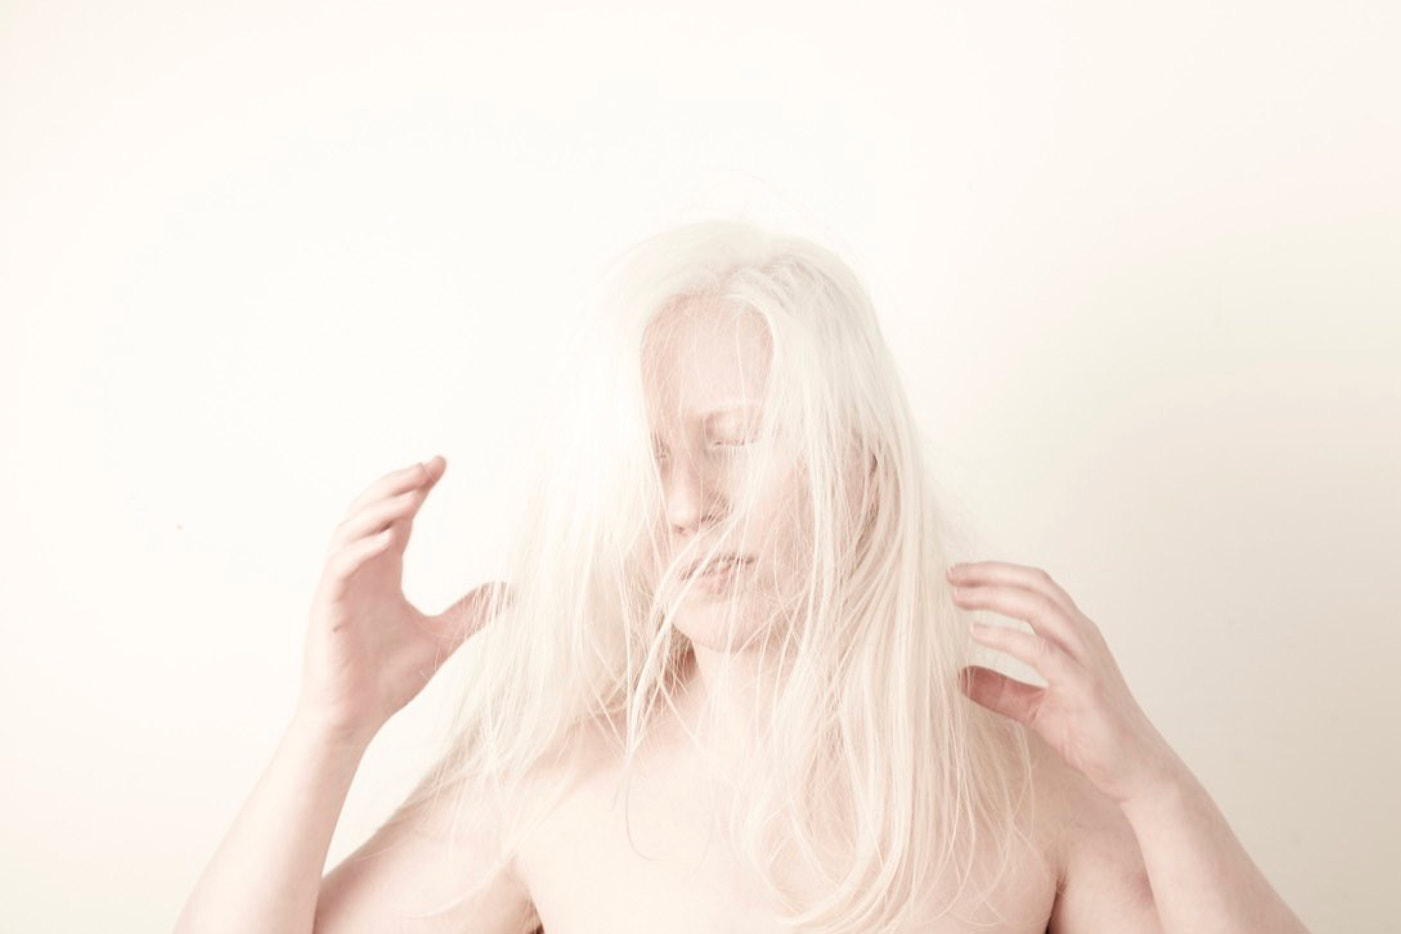 Eine Person mit langen blonden Haaren in hellem Licht vor einem hellen Hintergrund. Sie hält ihre Hände angewinkelt in die Luft, wie um etwas zu greifen. Die Haare verdecken teilweise ihr Gesicht.